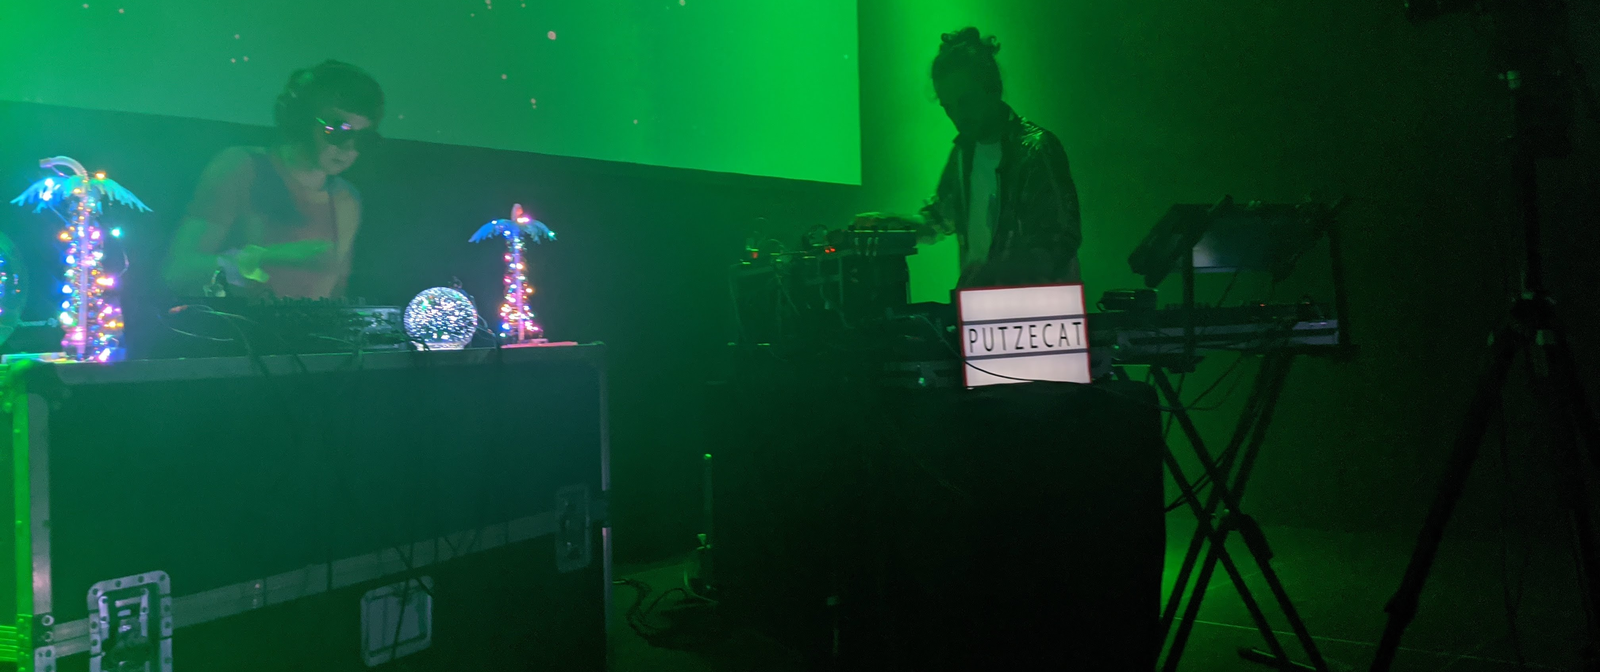 Links sthet ein DJ-Pult mit einer DJ, der die Turntables zwischen zwei leuchtenden Palmen bedient. Rechts ein ein Weiterer Musiker mit einem Keyboard. Auf einem Leuchtschild vor ihm ist der Schriftzug Putzecat zu lesen.